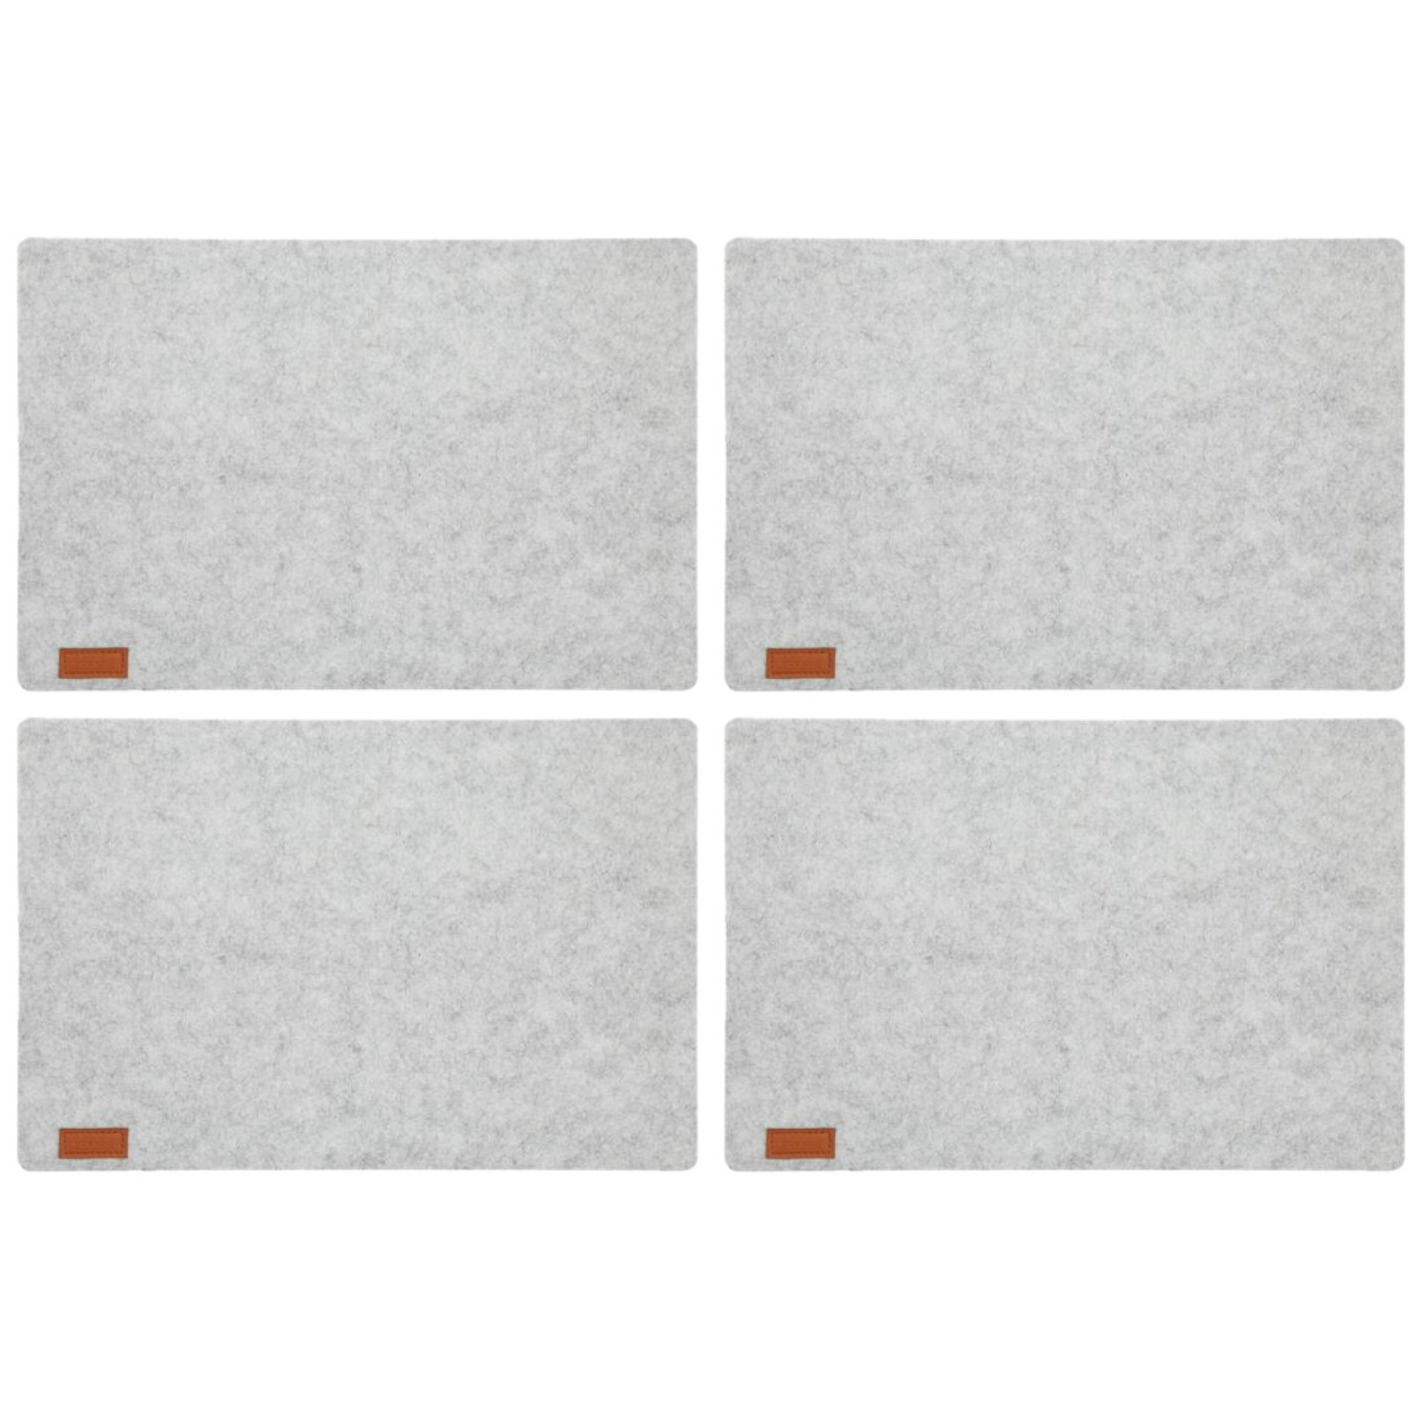 Cepewa 10x stuks rechthoekige placemats met ronde hoeken polyester licht grijs 30 x 45 cm -